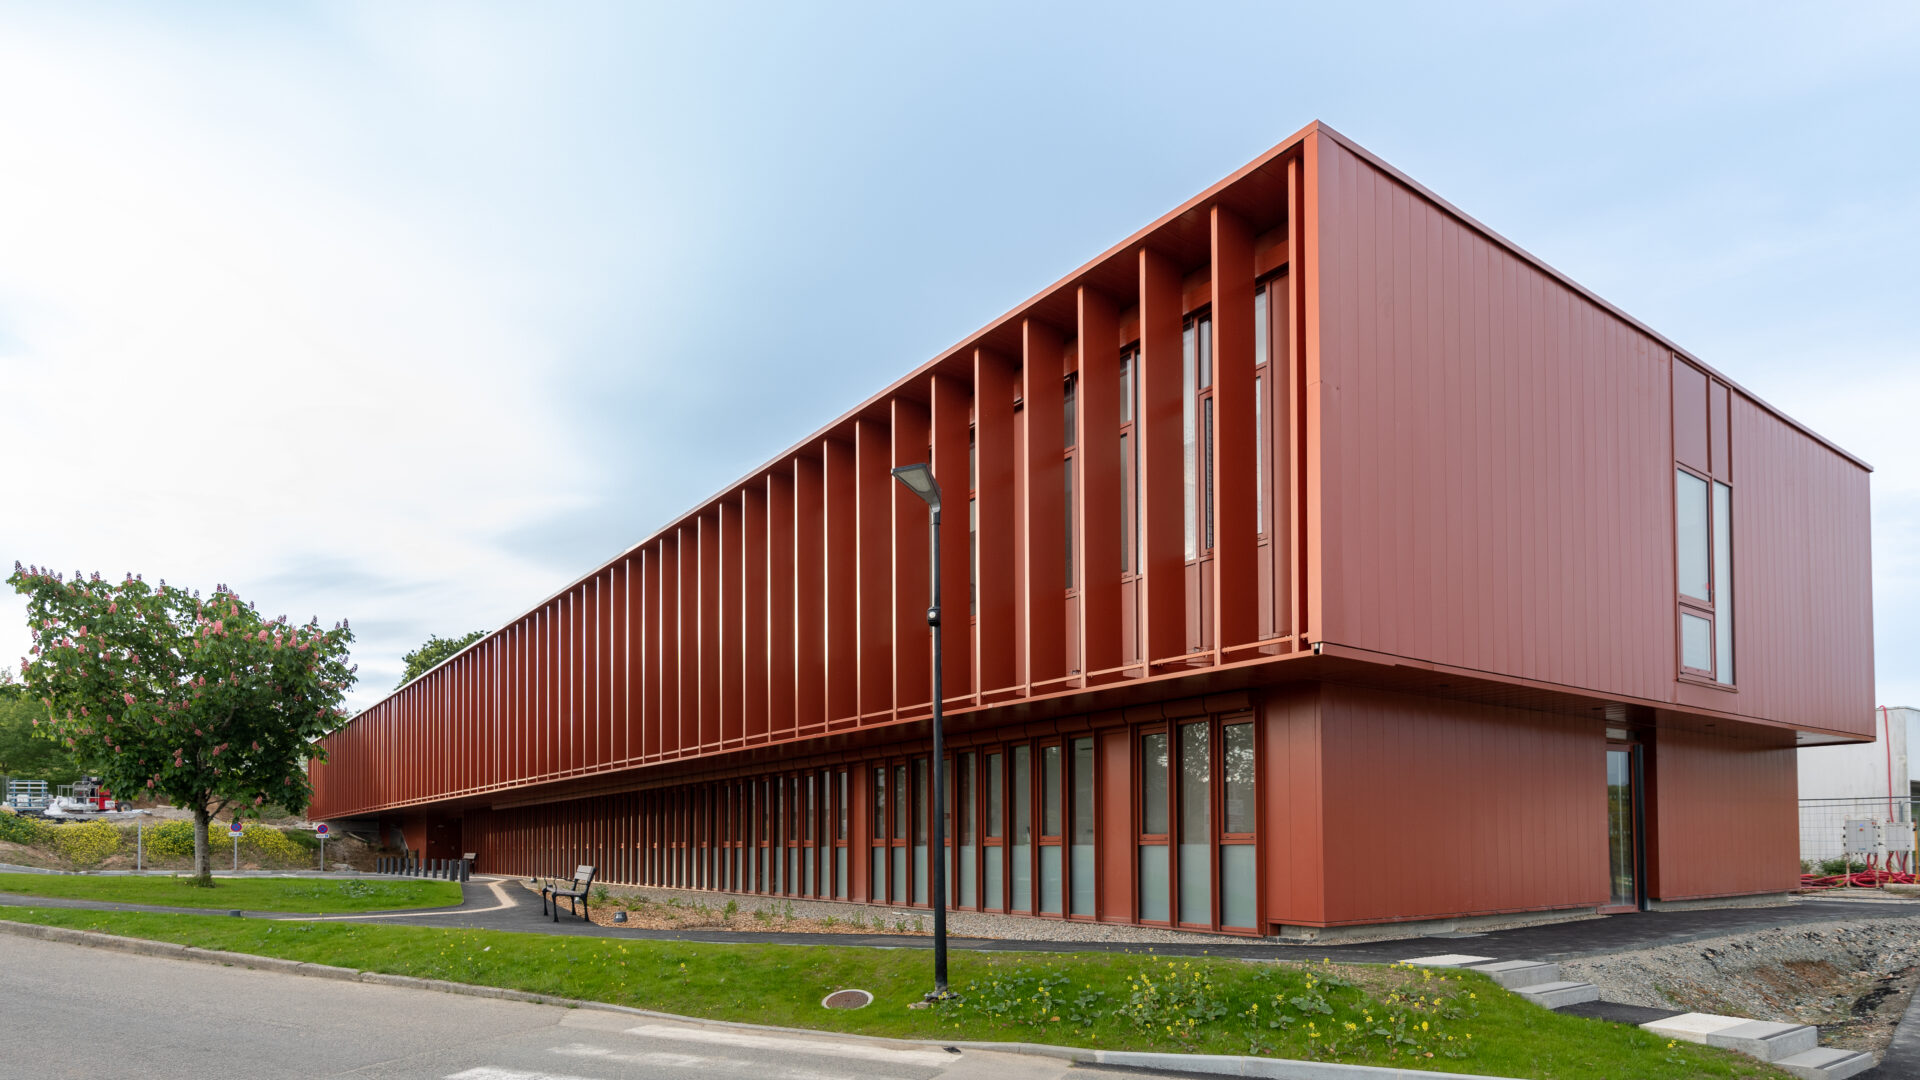 Vue extérieure du Centre Hospitalier de Douarnenez, un projet d'architecture médicale d'A26, mettant en avant la durabilité et l'efficacité énergétique avec son design moderne et ses espaces verts intégrés.